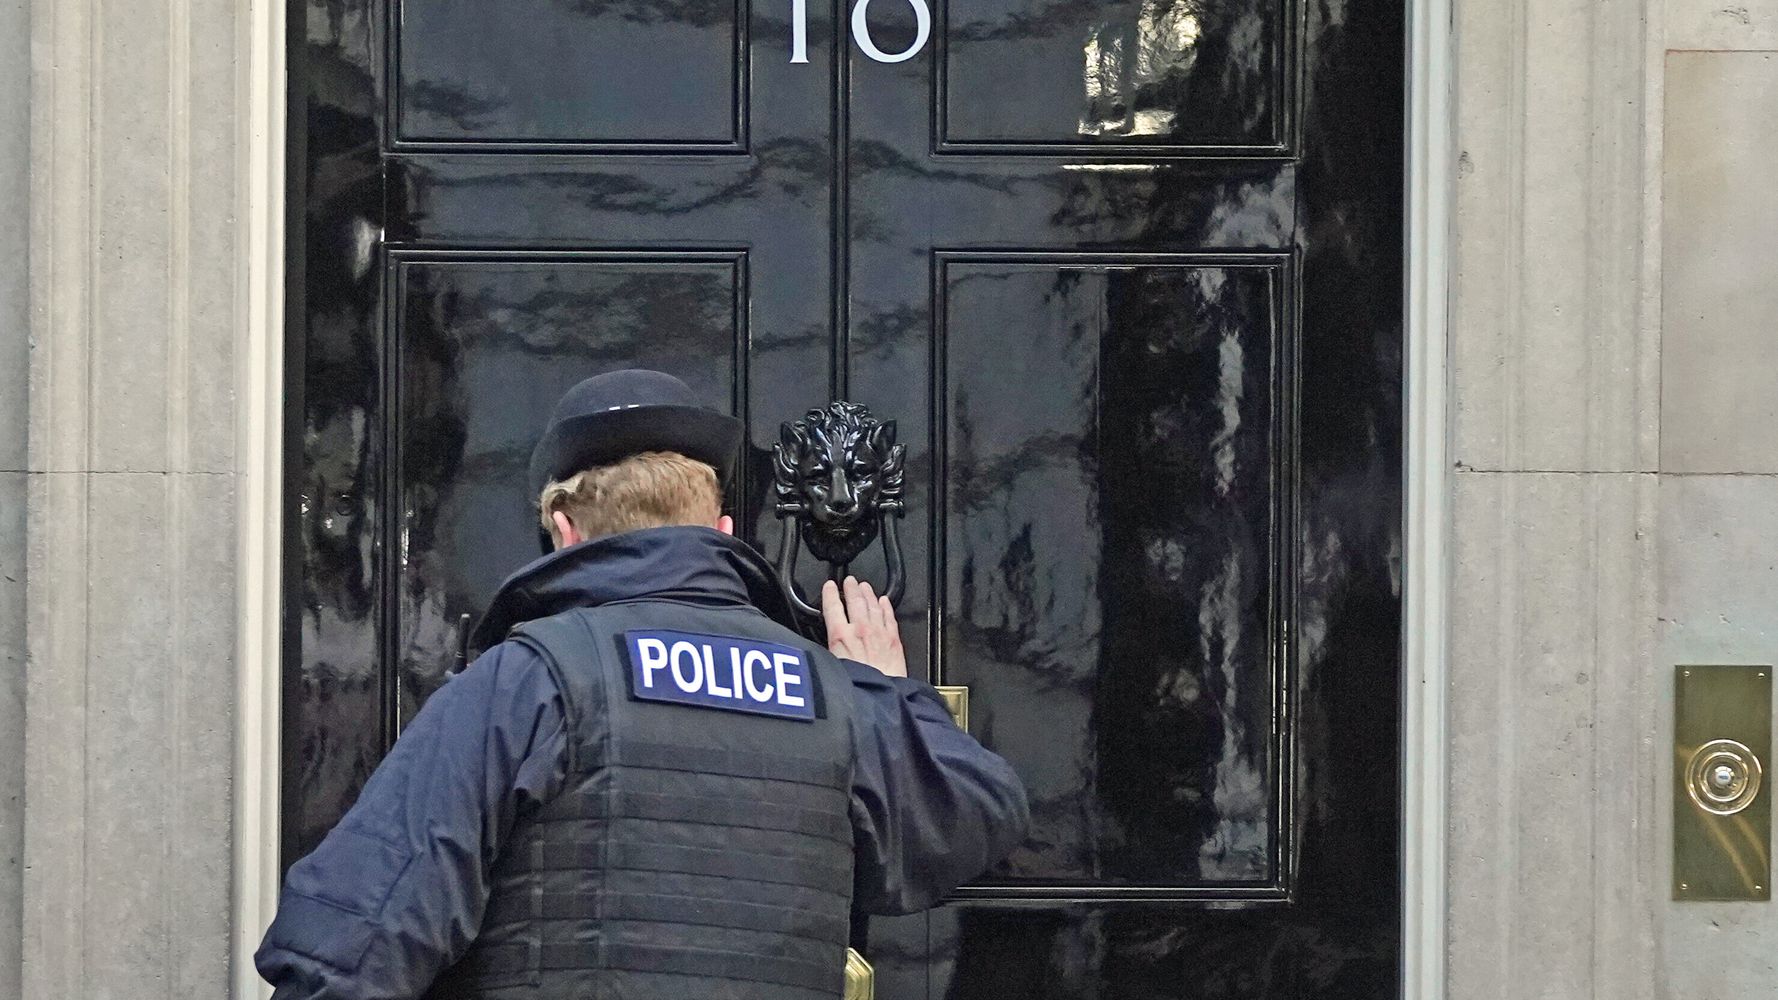 Don T Threaten Police Boris Johnson S Allies Warned Over Partygate Huffpost Uk Politics